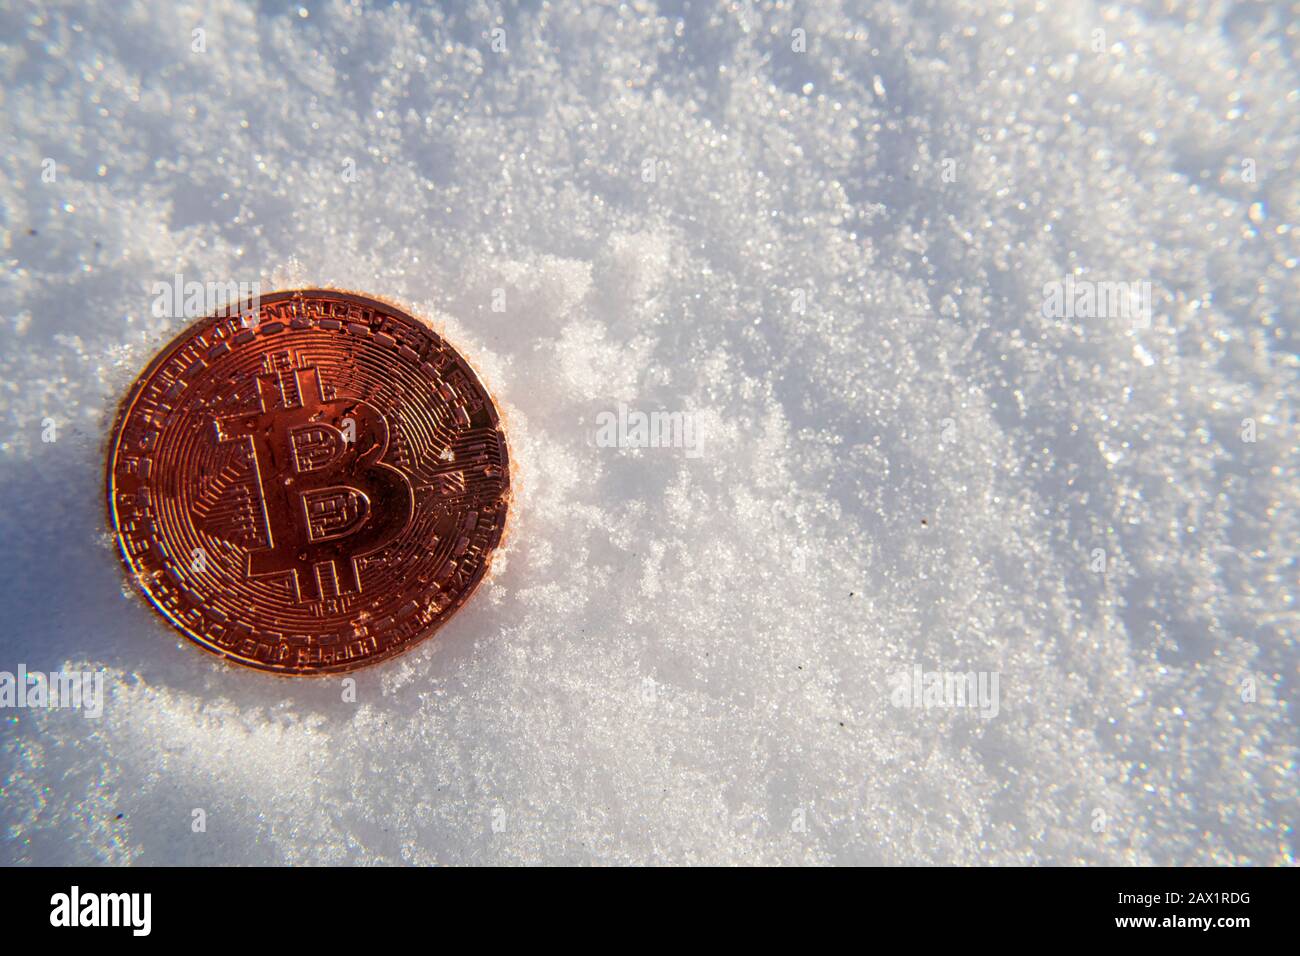 La moneda de oro de Bitcoin criptomoneda se congela en la nieve bajo el sol esperando a derretirse y descongelarse. El precio rompe la zona de congelación Foto de stock